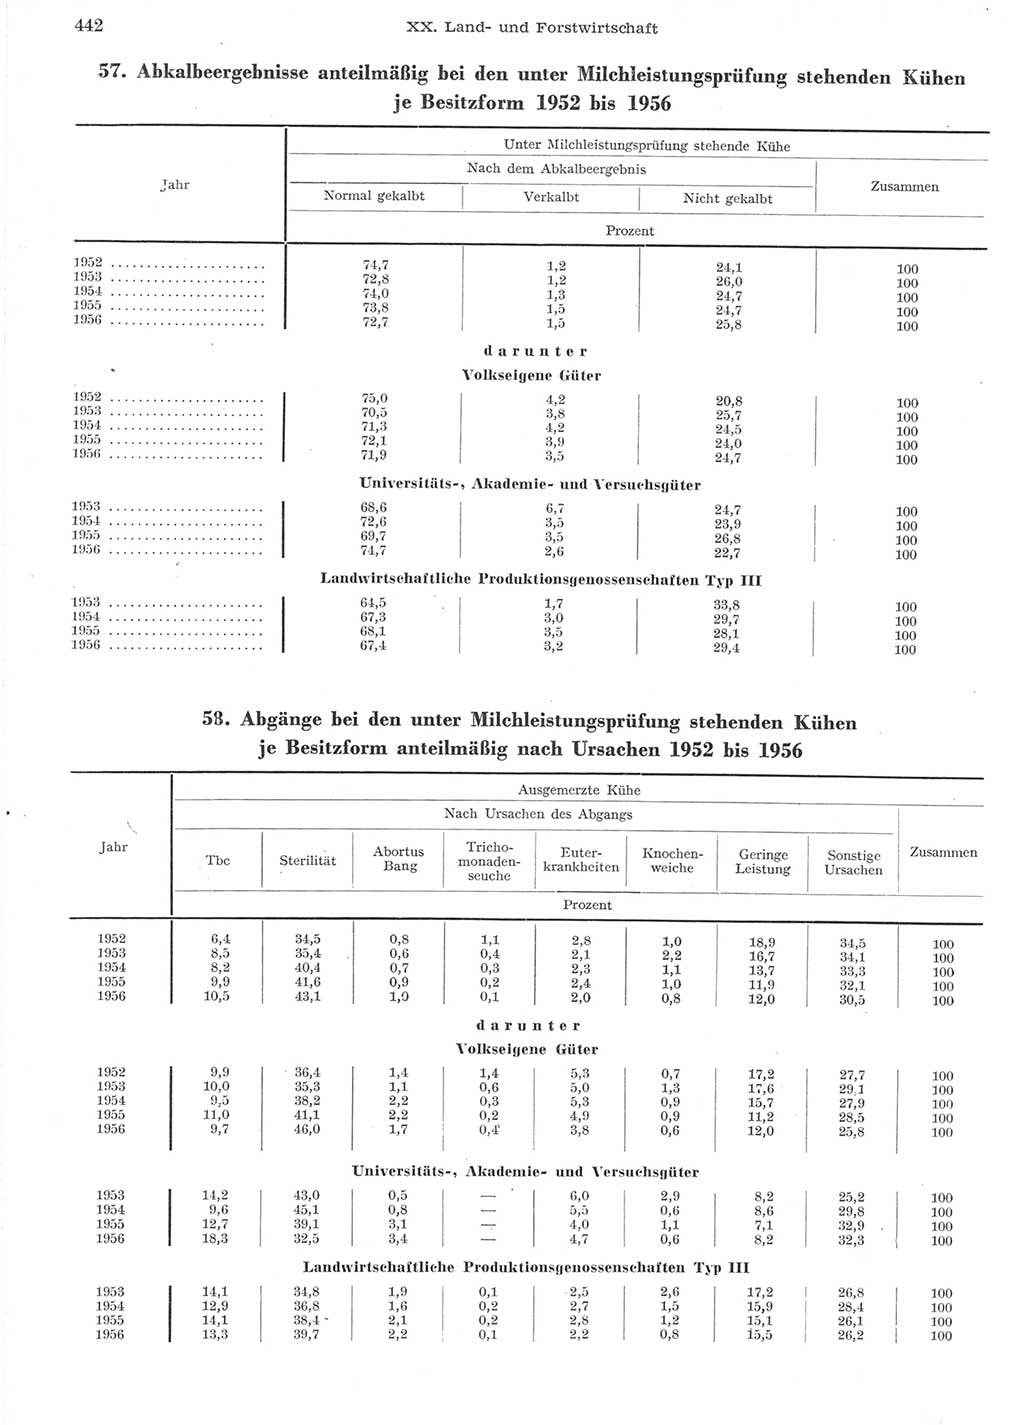 Statistisches Jahrbuch der Deutschen Demokratischen Republik (DDR) 1957, Seite 442 (Stat. Jb. DDR 1957, S. 442)